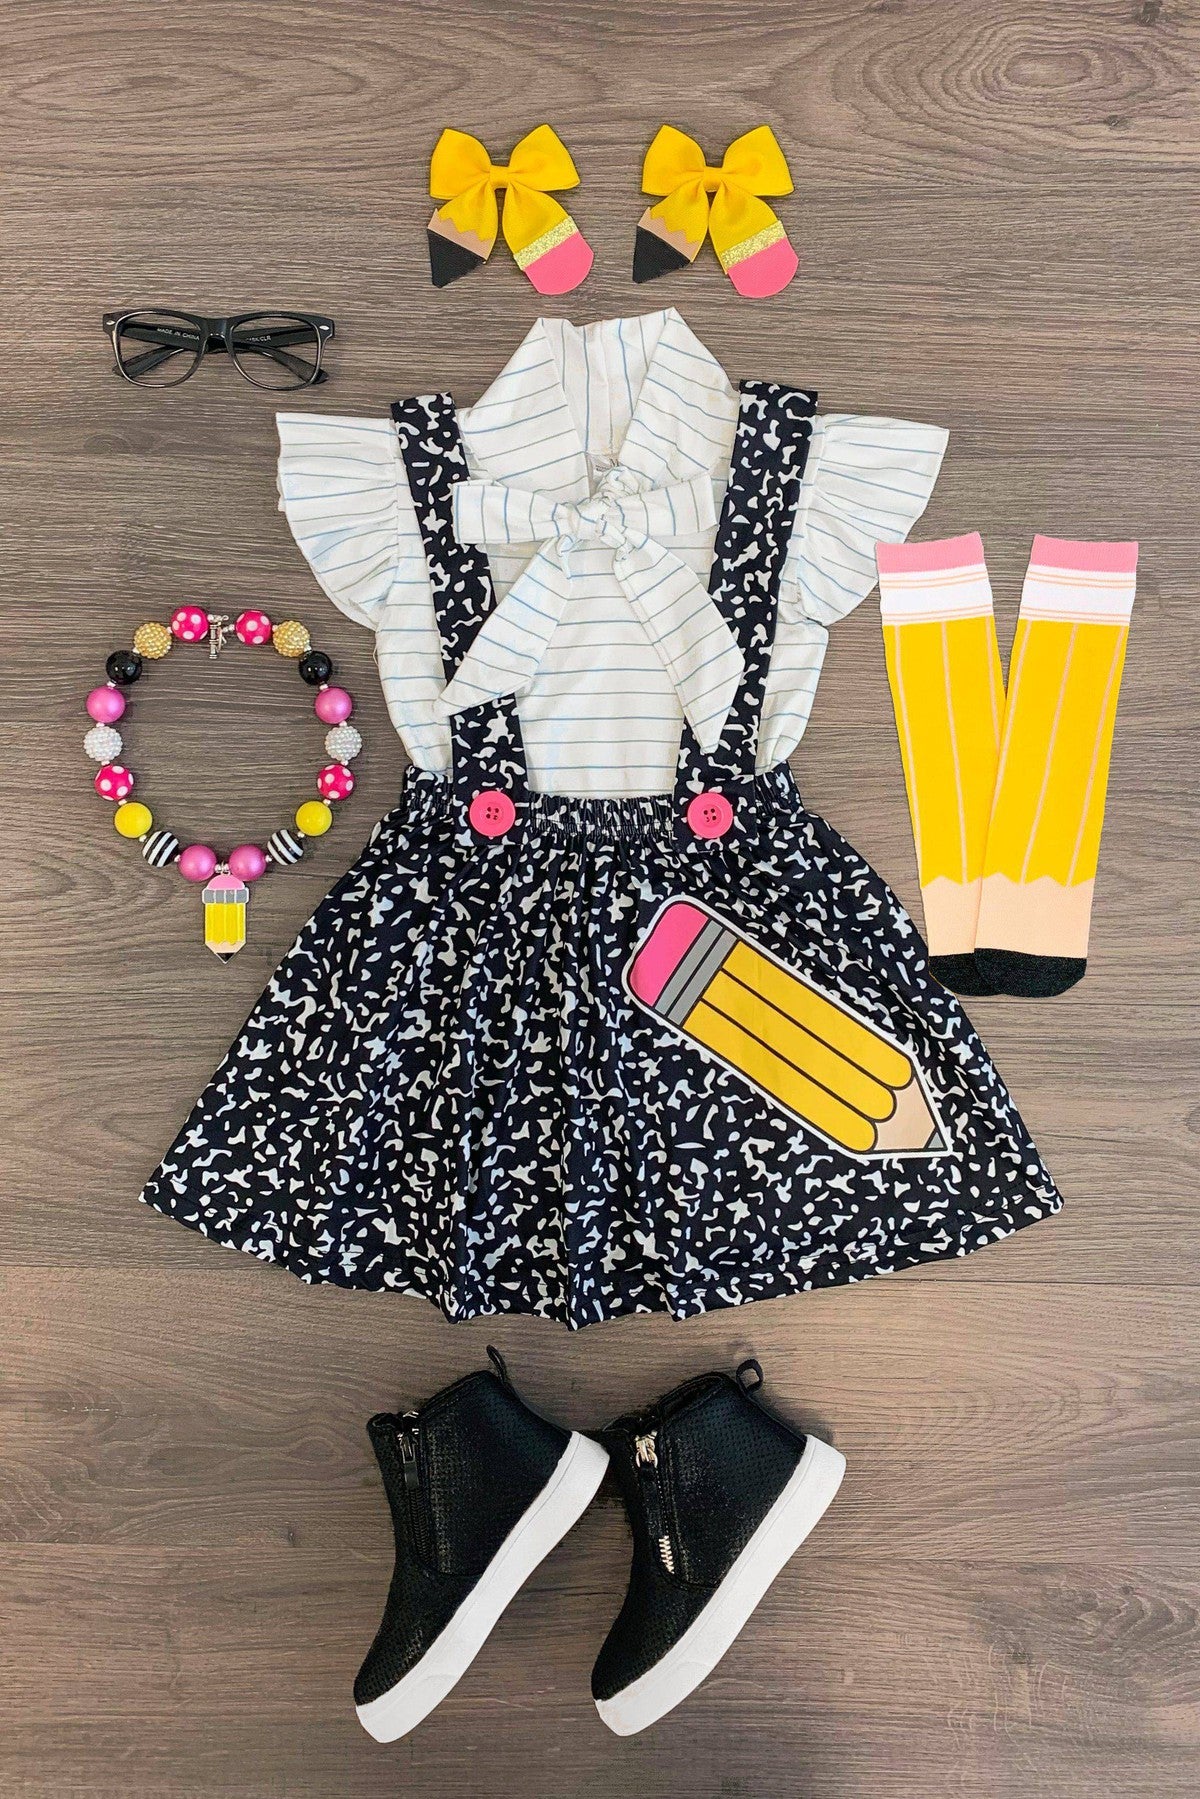 Composition Notebook Suspender Skirt Set - Sparkle in Pink